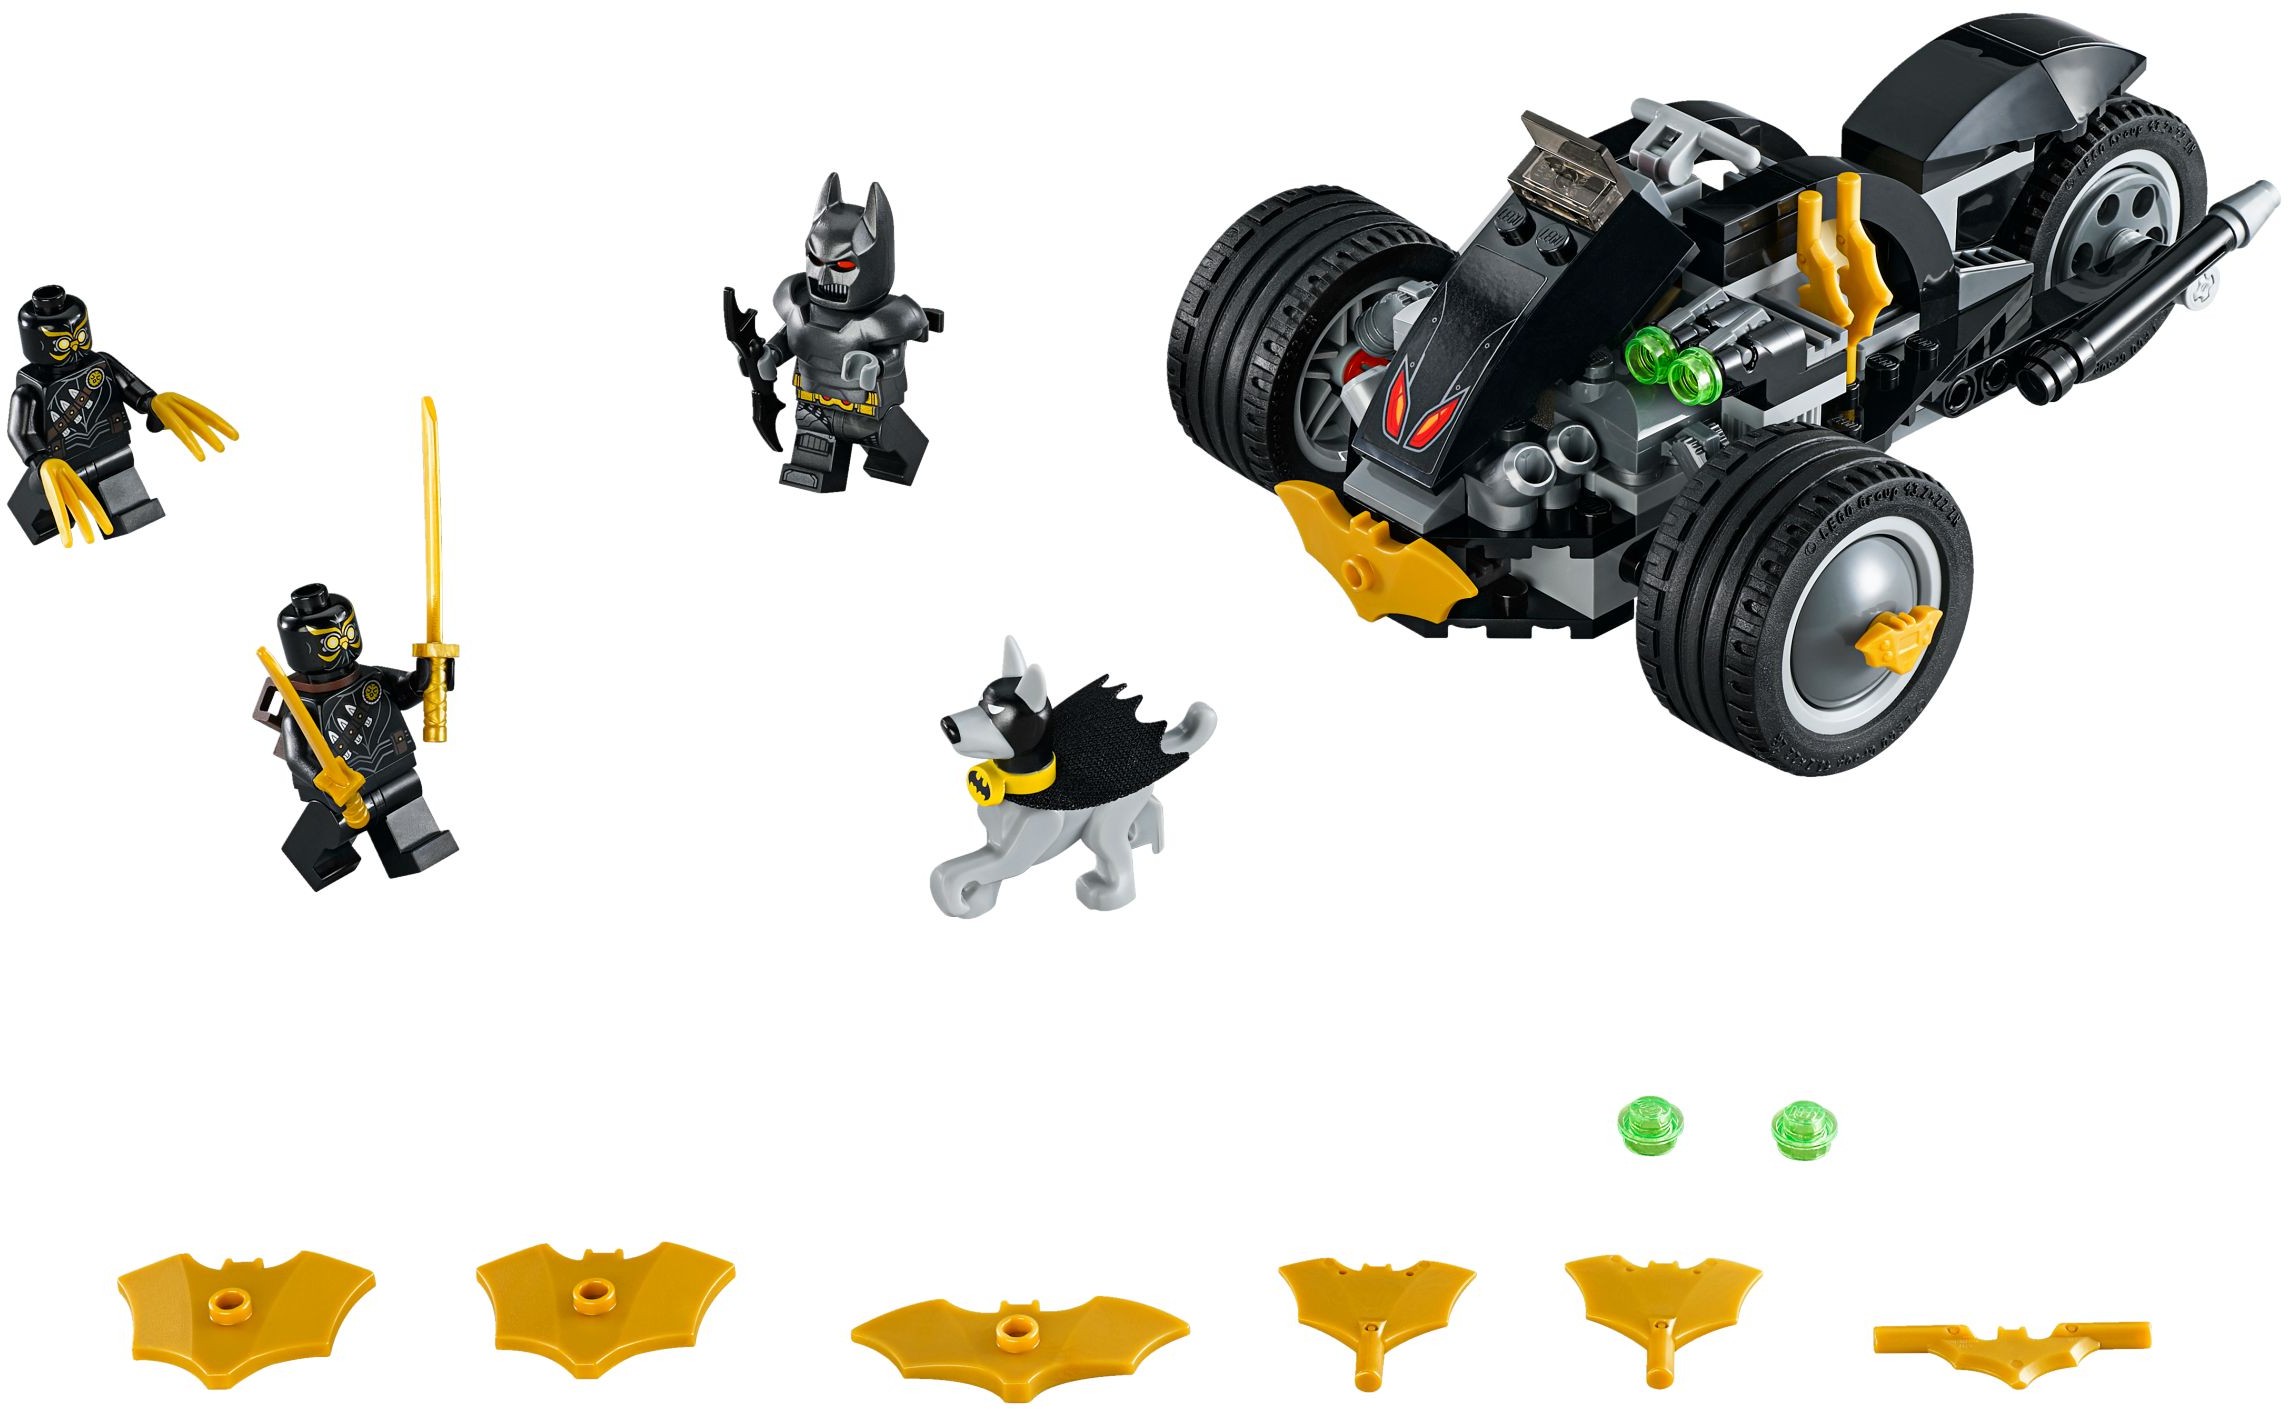 LEGO Batman 2018 Brickset